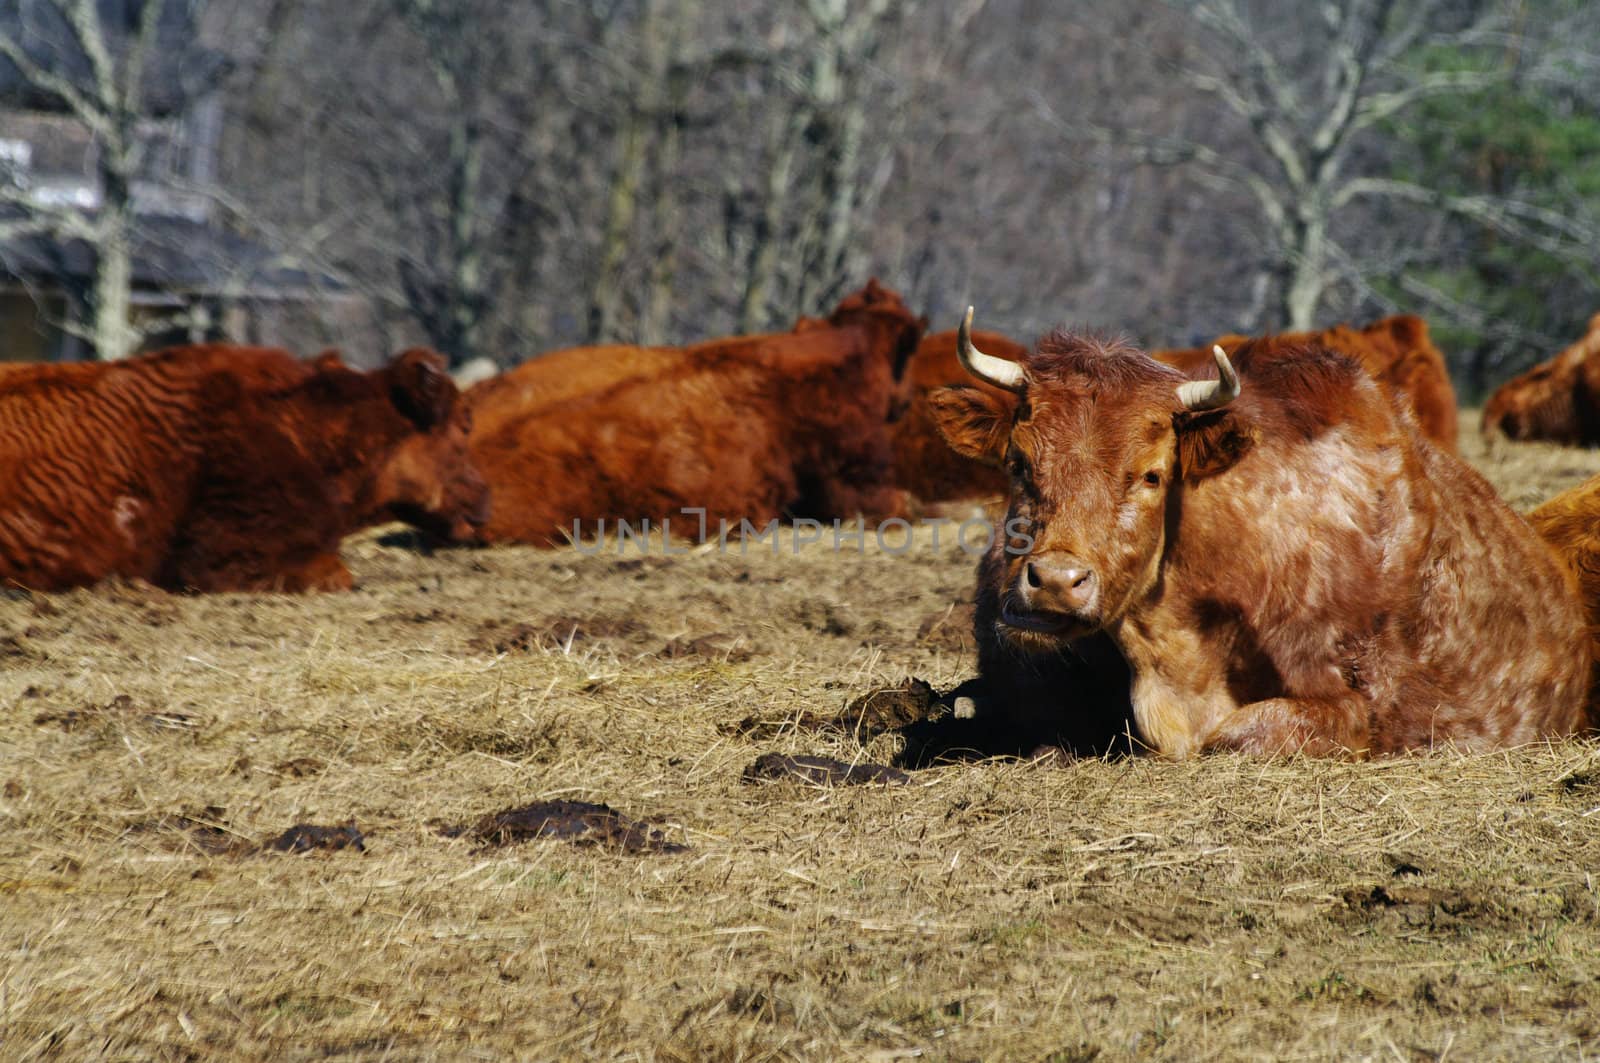 Cattle in the field by edcorey